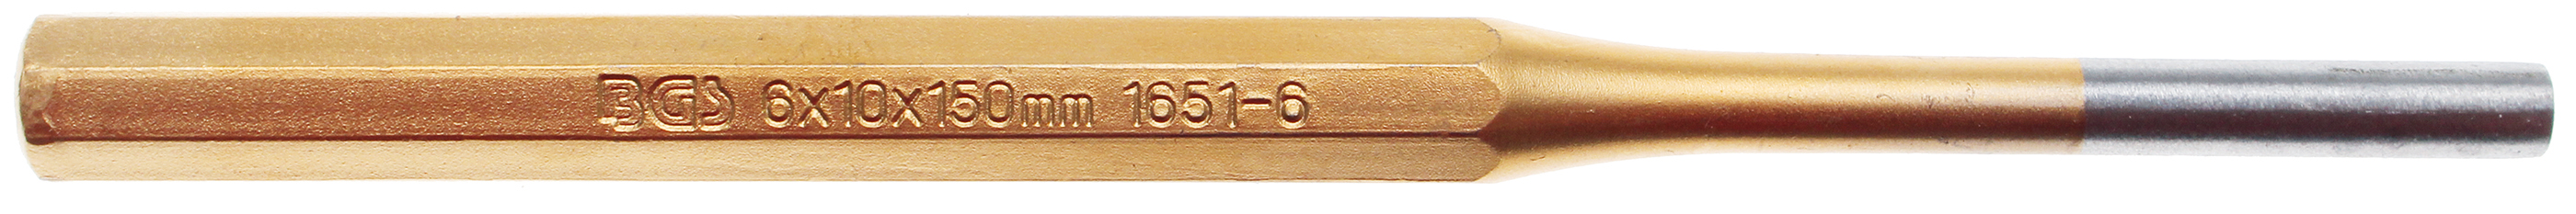 BGS 1651-6 Dorn 6 mm pentru mecanici, lungime 150 mm